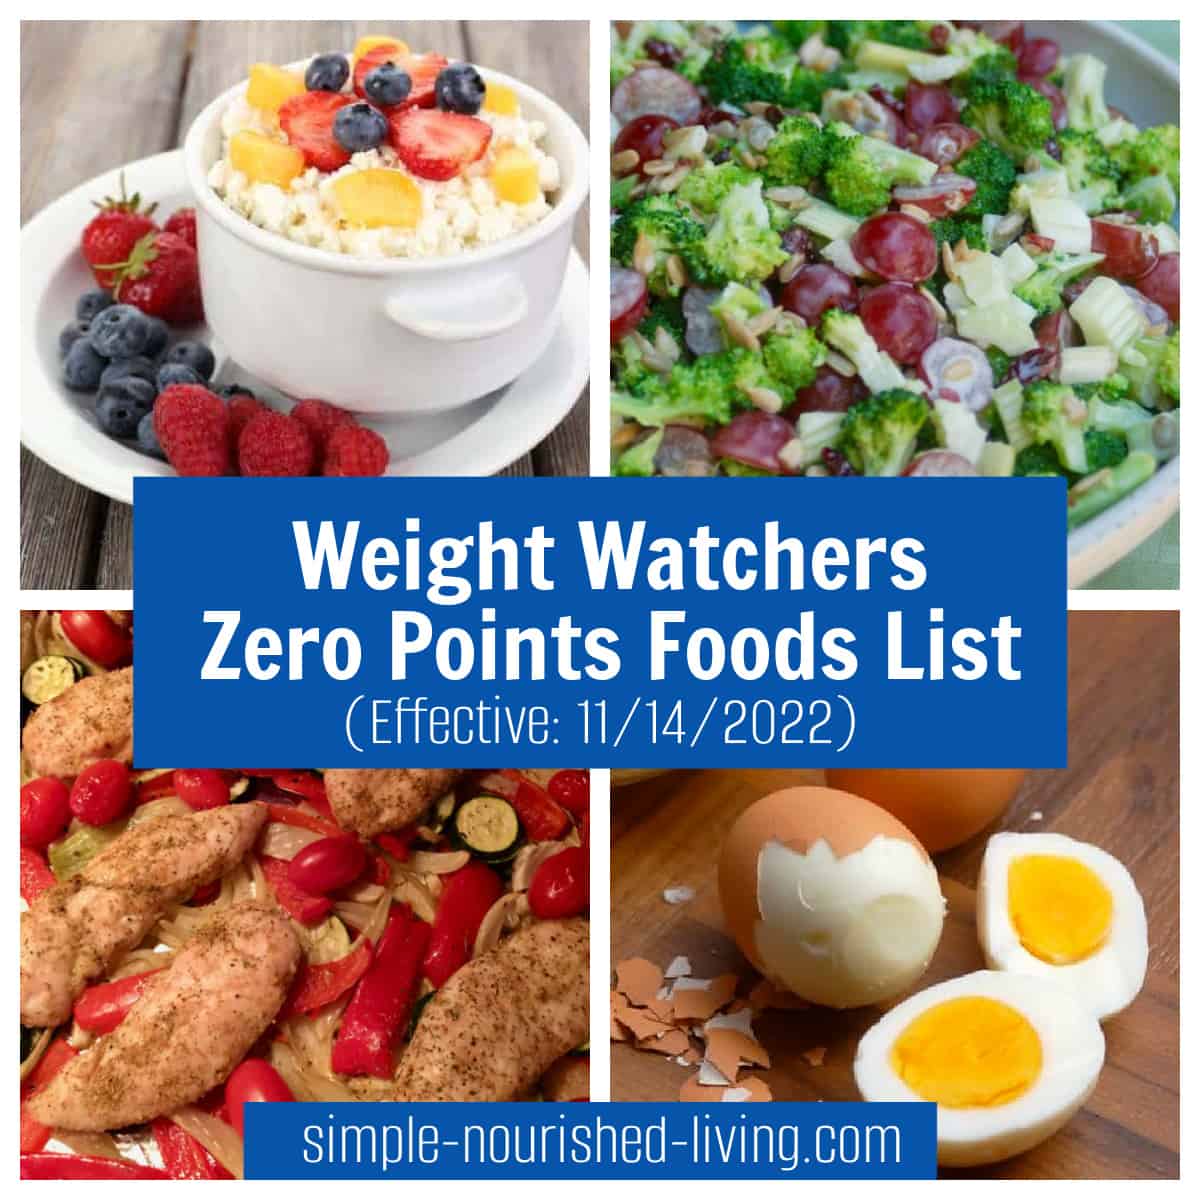 κολάζ φαγητού cottage cheese, μπρόκολο σαλάτα, κοτόπουλο, αυγά με επικάλυψη κειμένου WW Zero Points Foods List